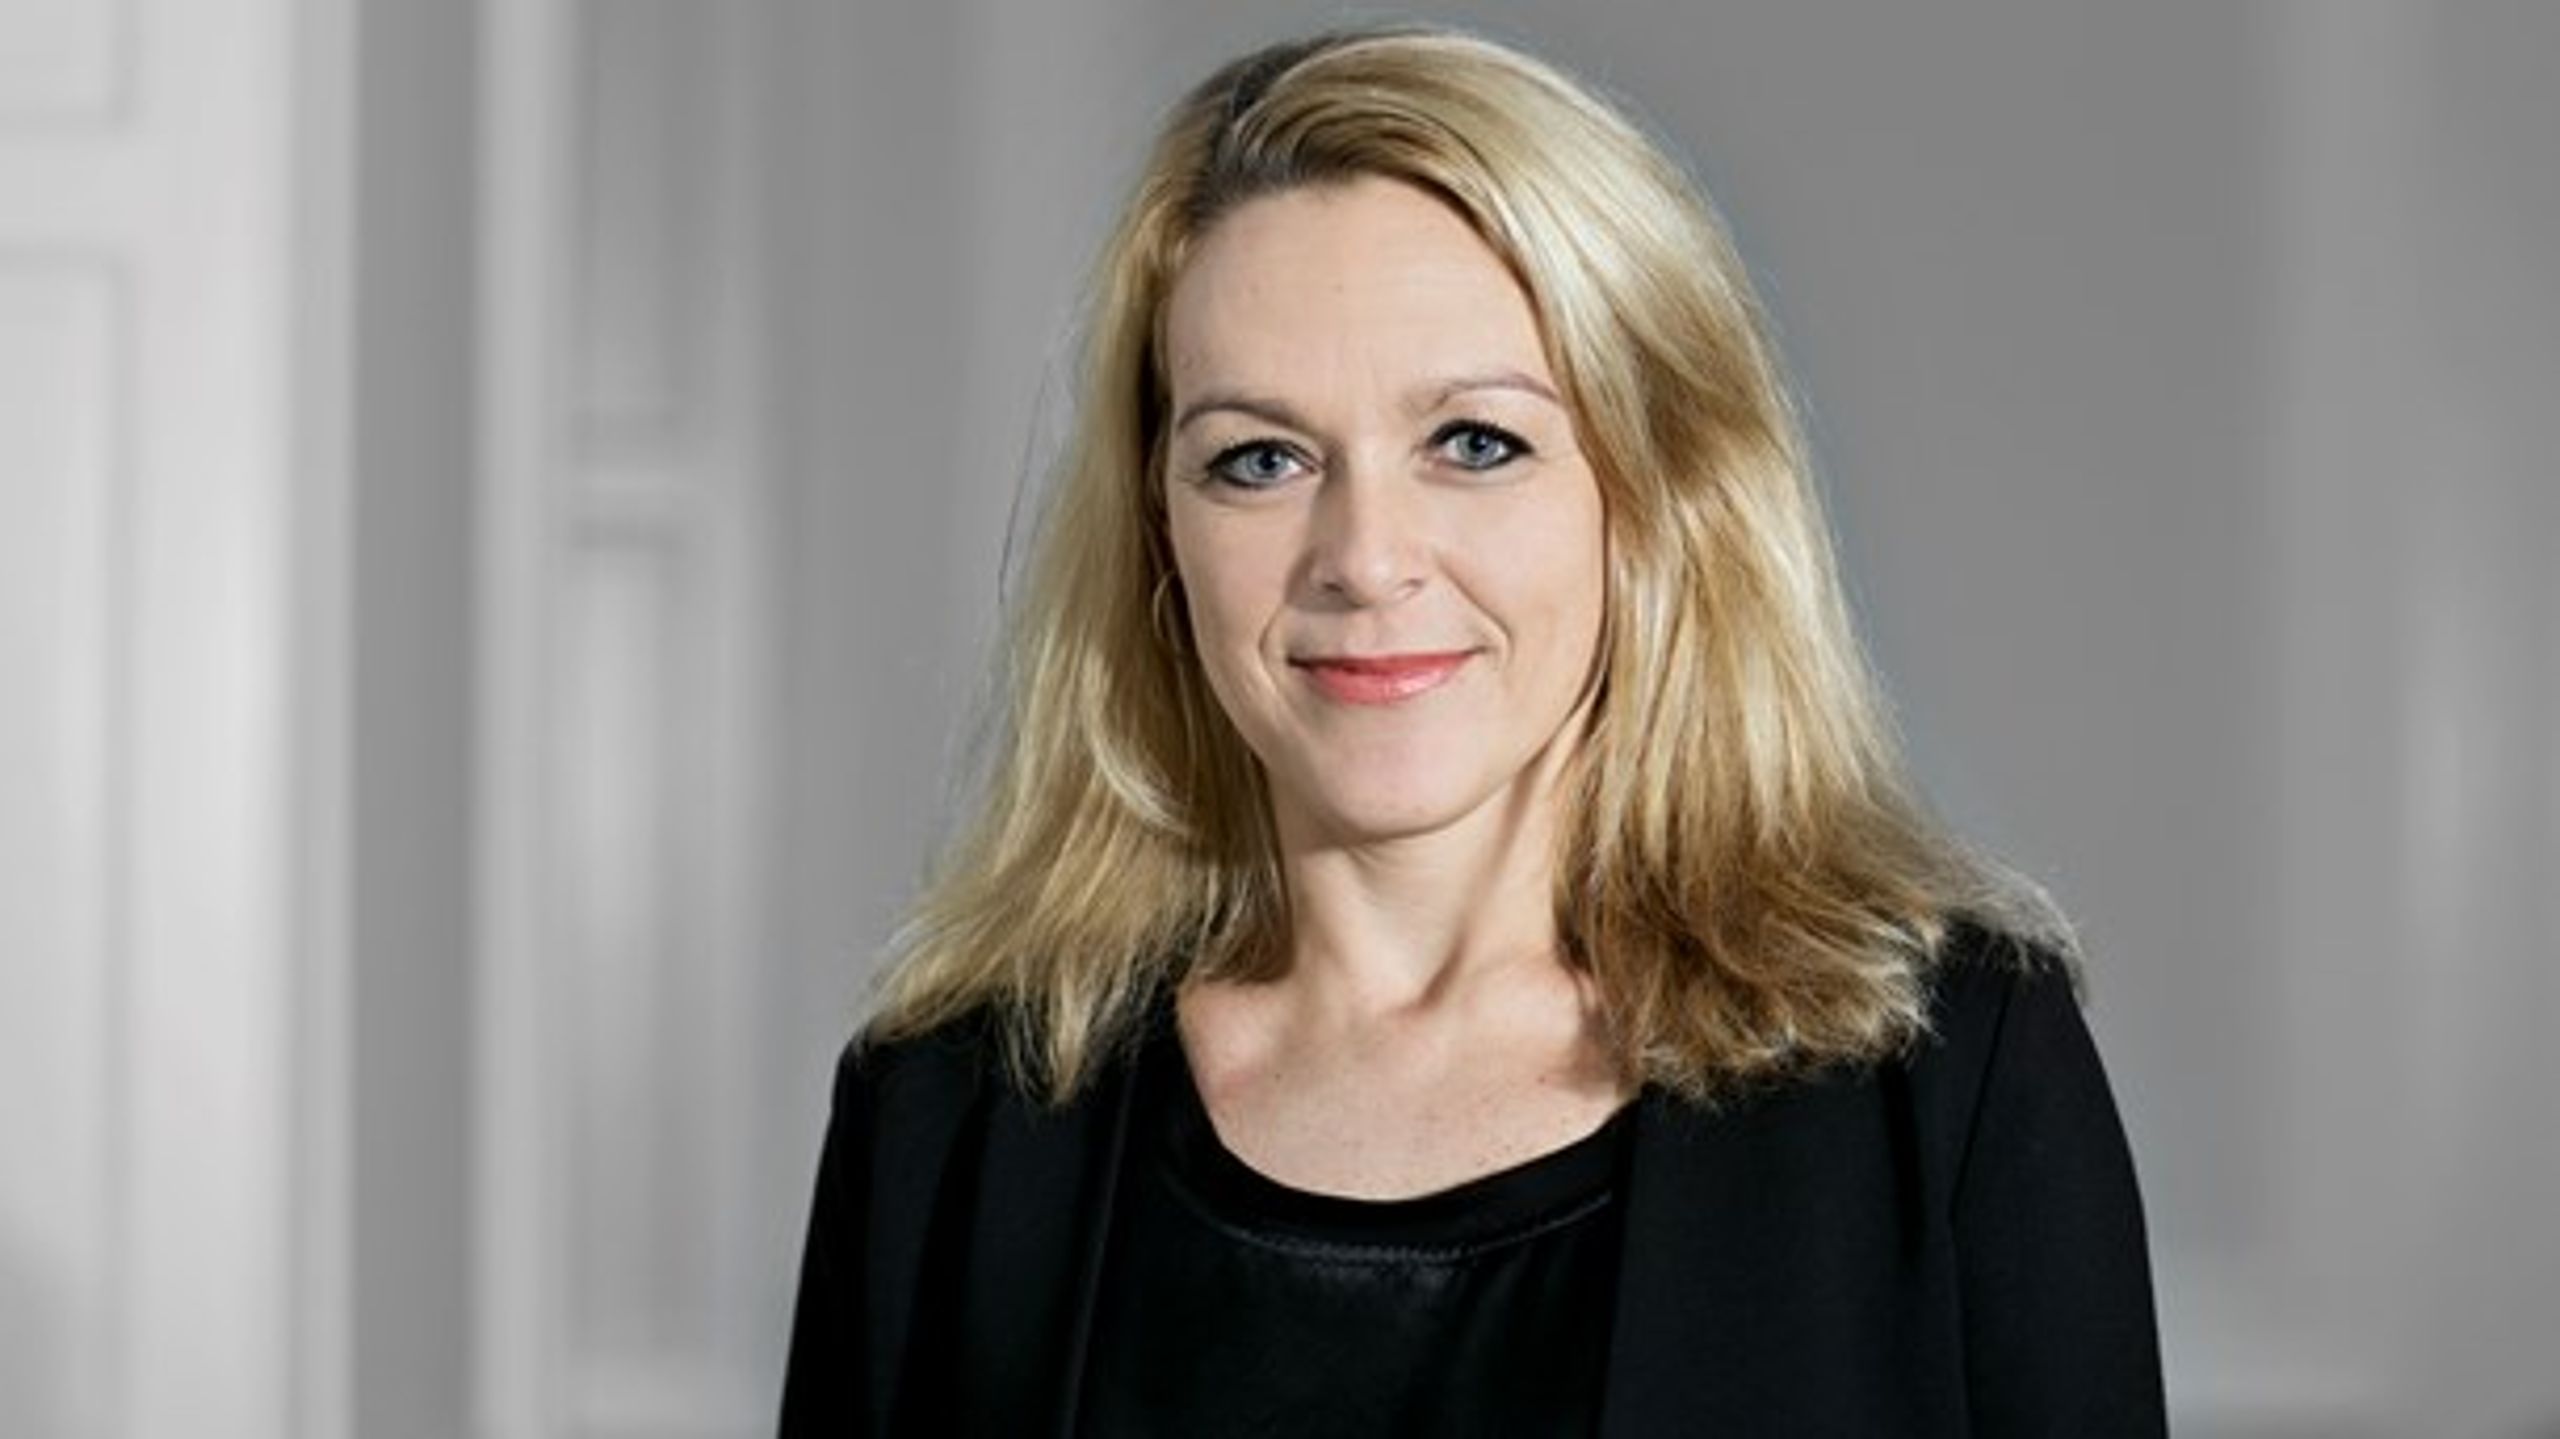 Det er vigtigt, at debatten om ligestilling ikke kommer til at handle om mere lovgivning, mener&nbsp;<b></b>Pernille Knudsen fra DA.